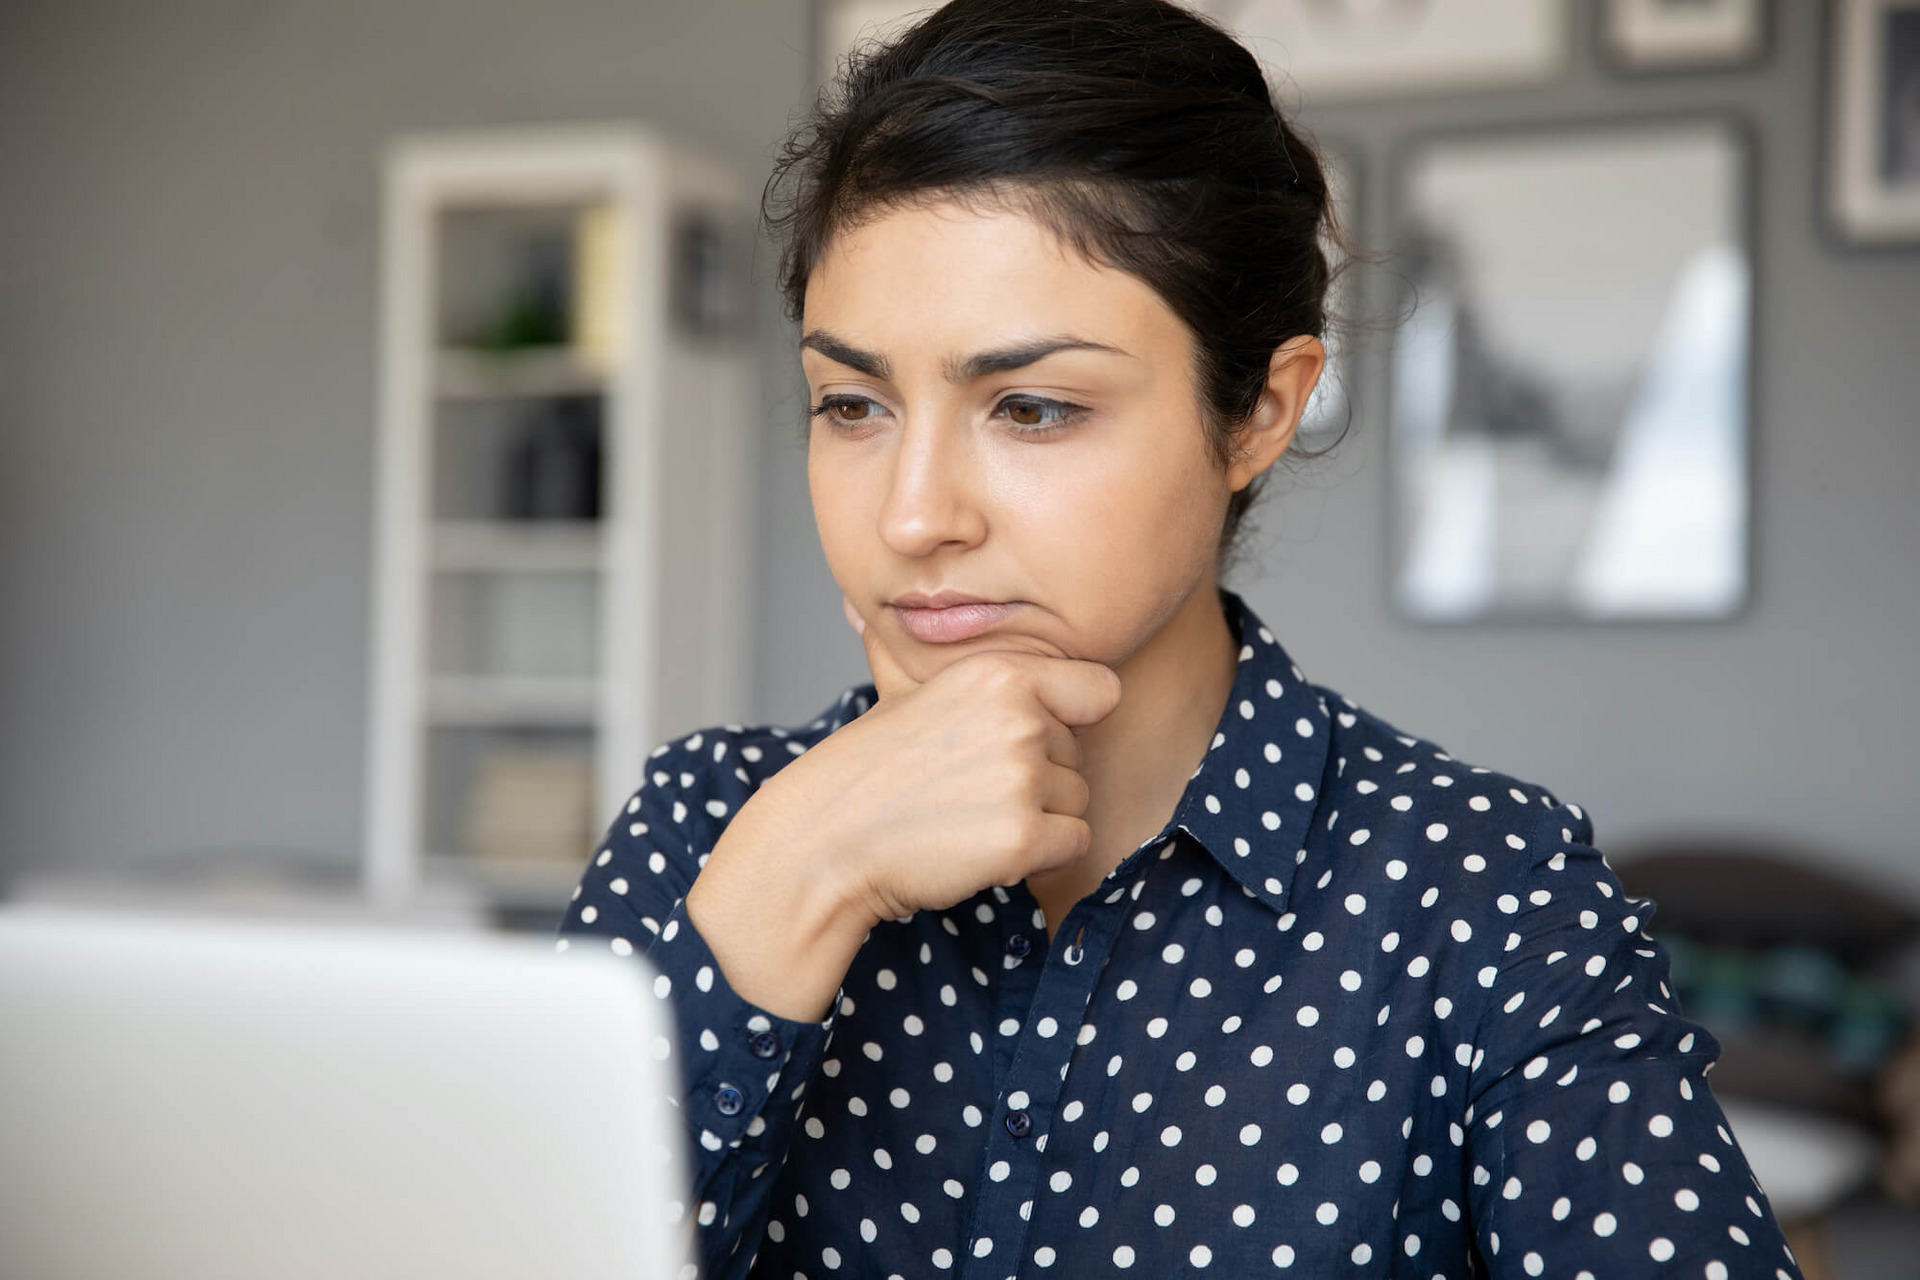 Eine Frau in gepunkteter Bluse sitzt vor einem Laptop und hat einen unsicheren, nachdenklichen Gesichtsausdruck.